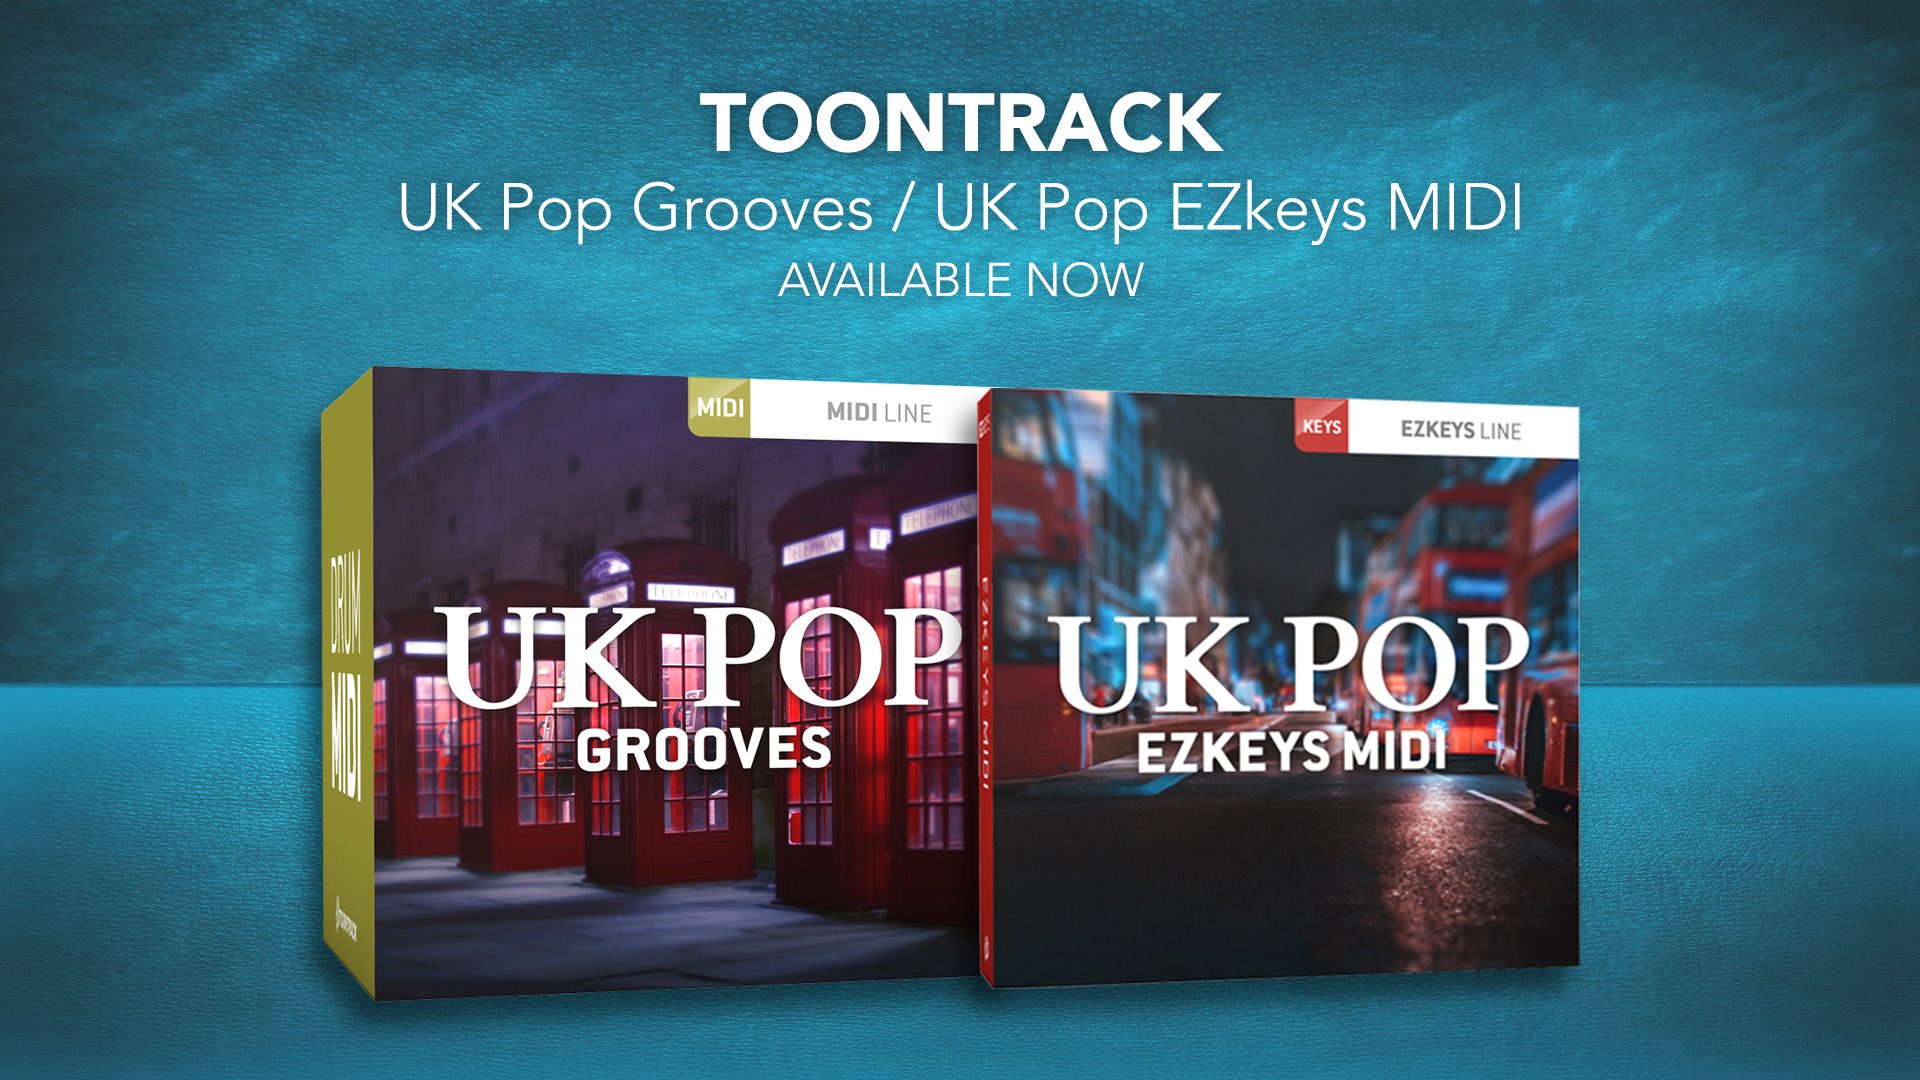 Toontrack UK Pop Grooves & EZkeys packs